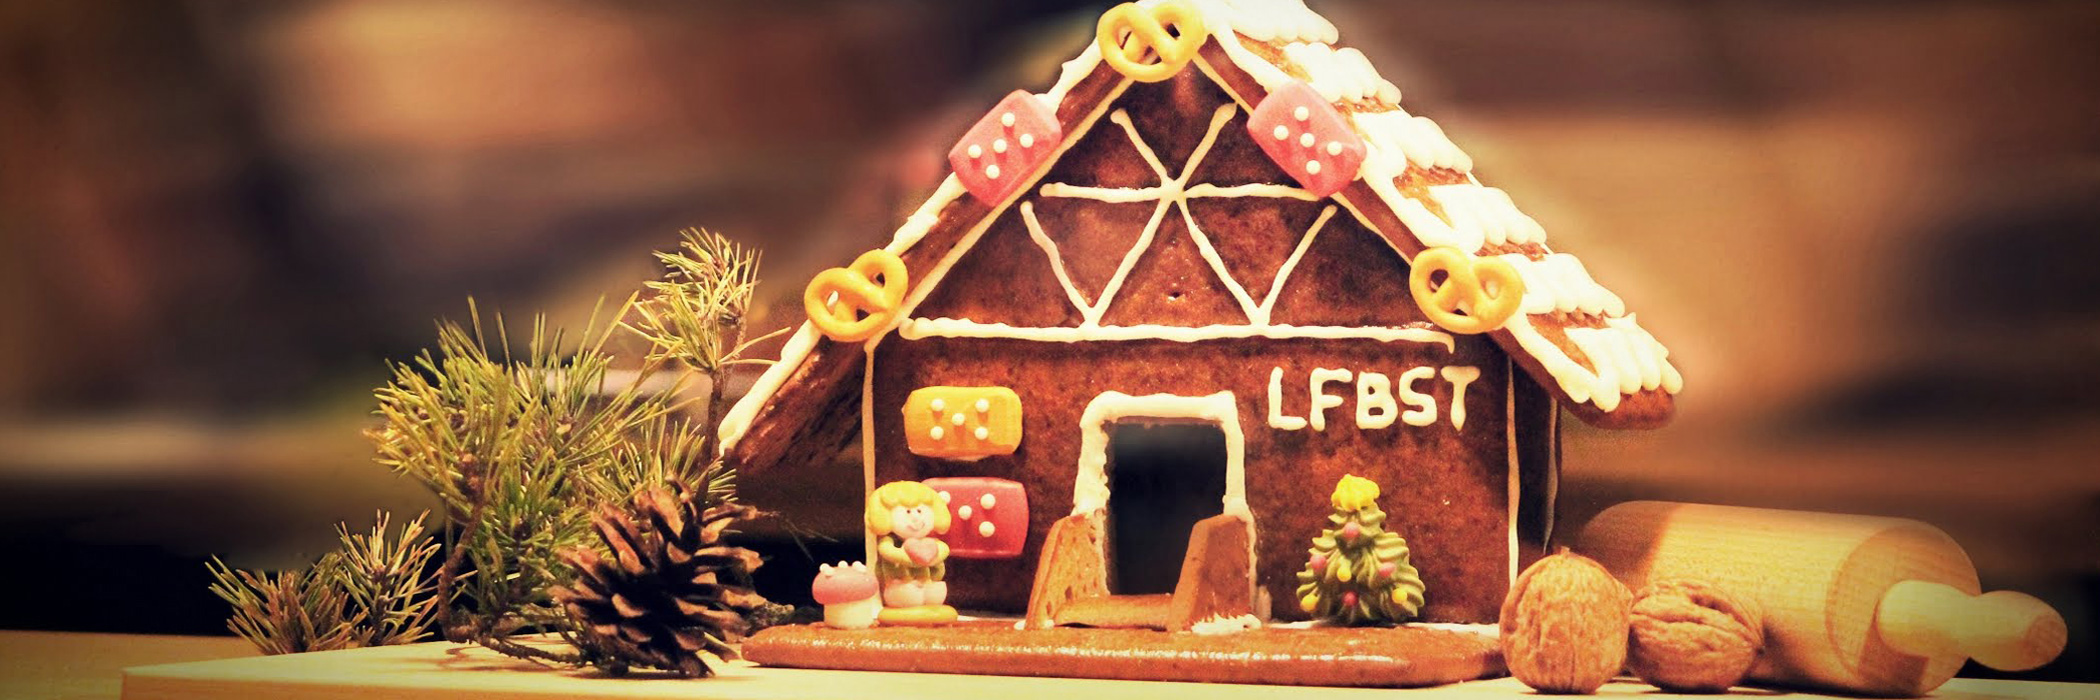 Lebkuchenhaus mit den Buchstaben LFBST am Haus steht auf einem Tisch